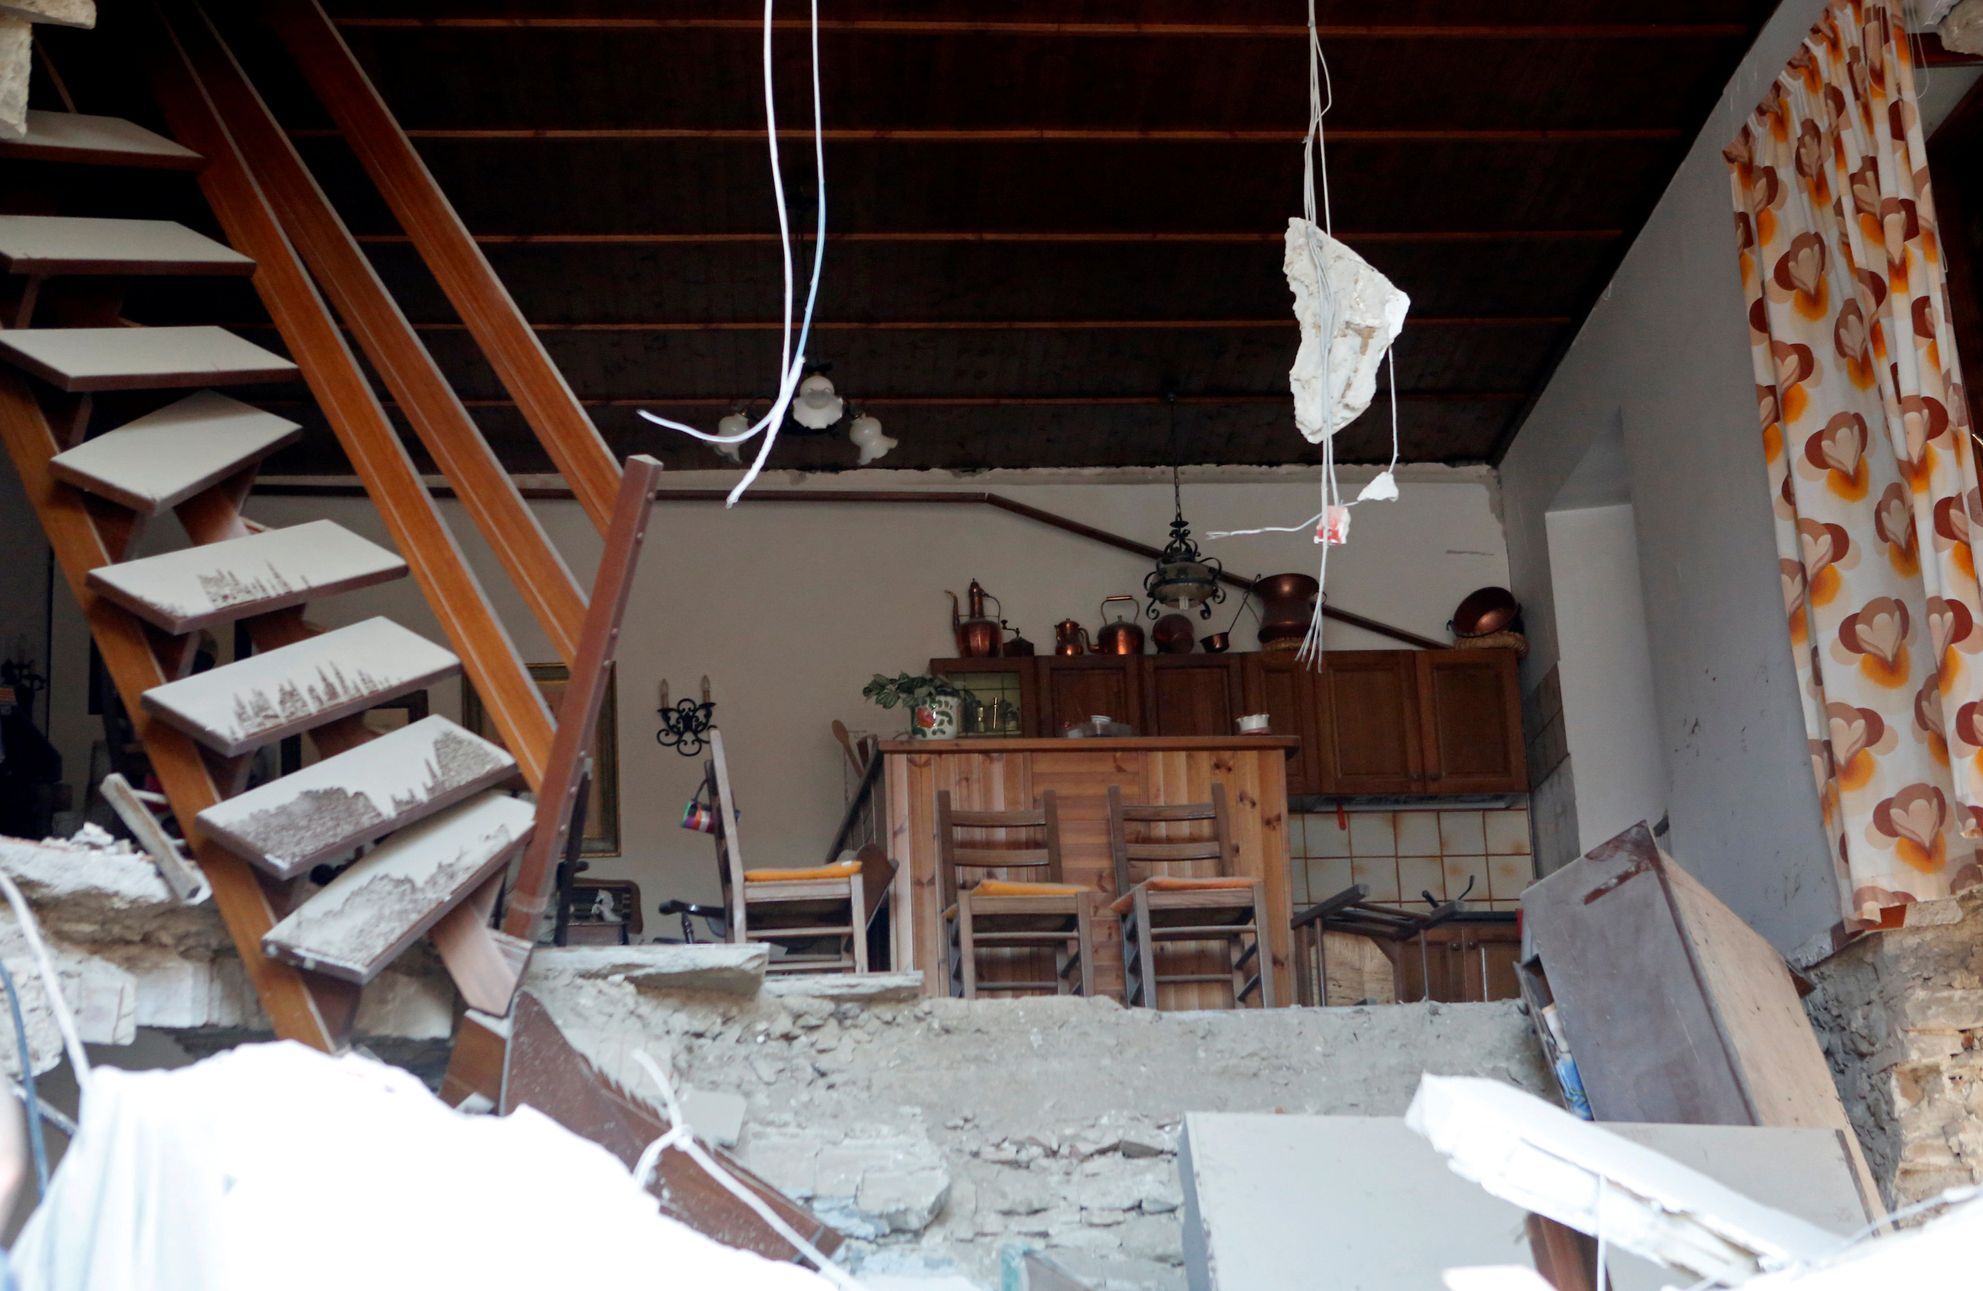 Následky zemětřesení ve středoitalském Amatrice